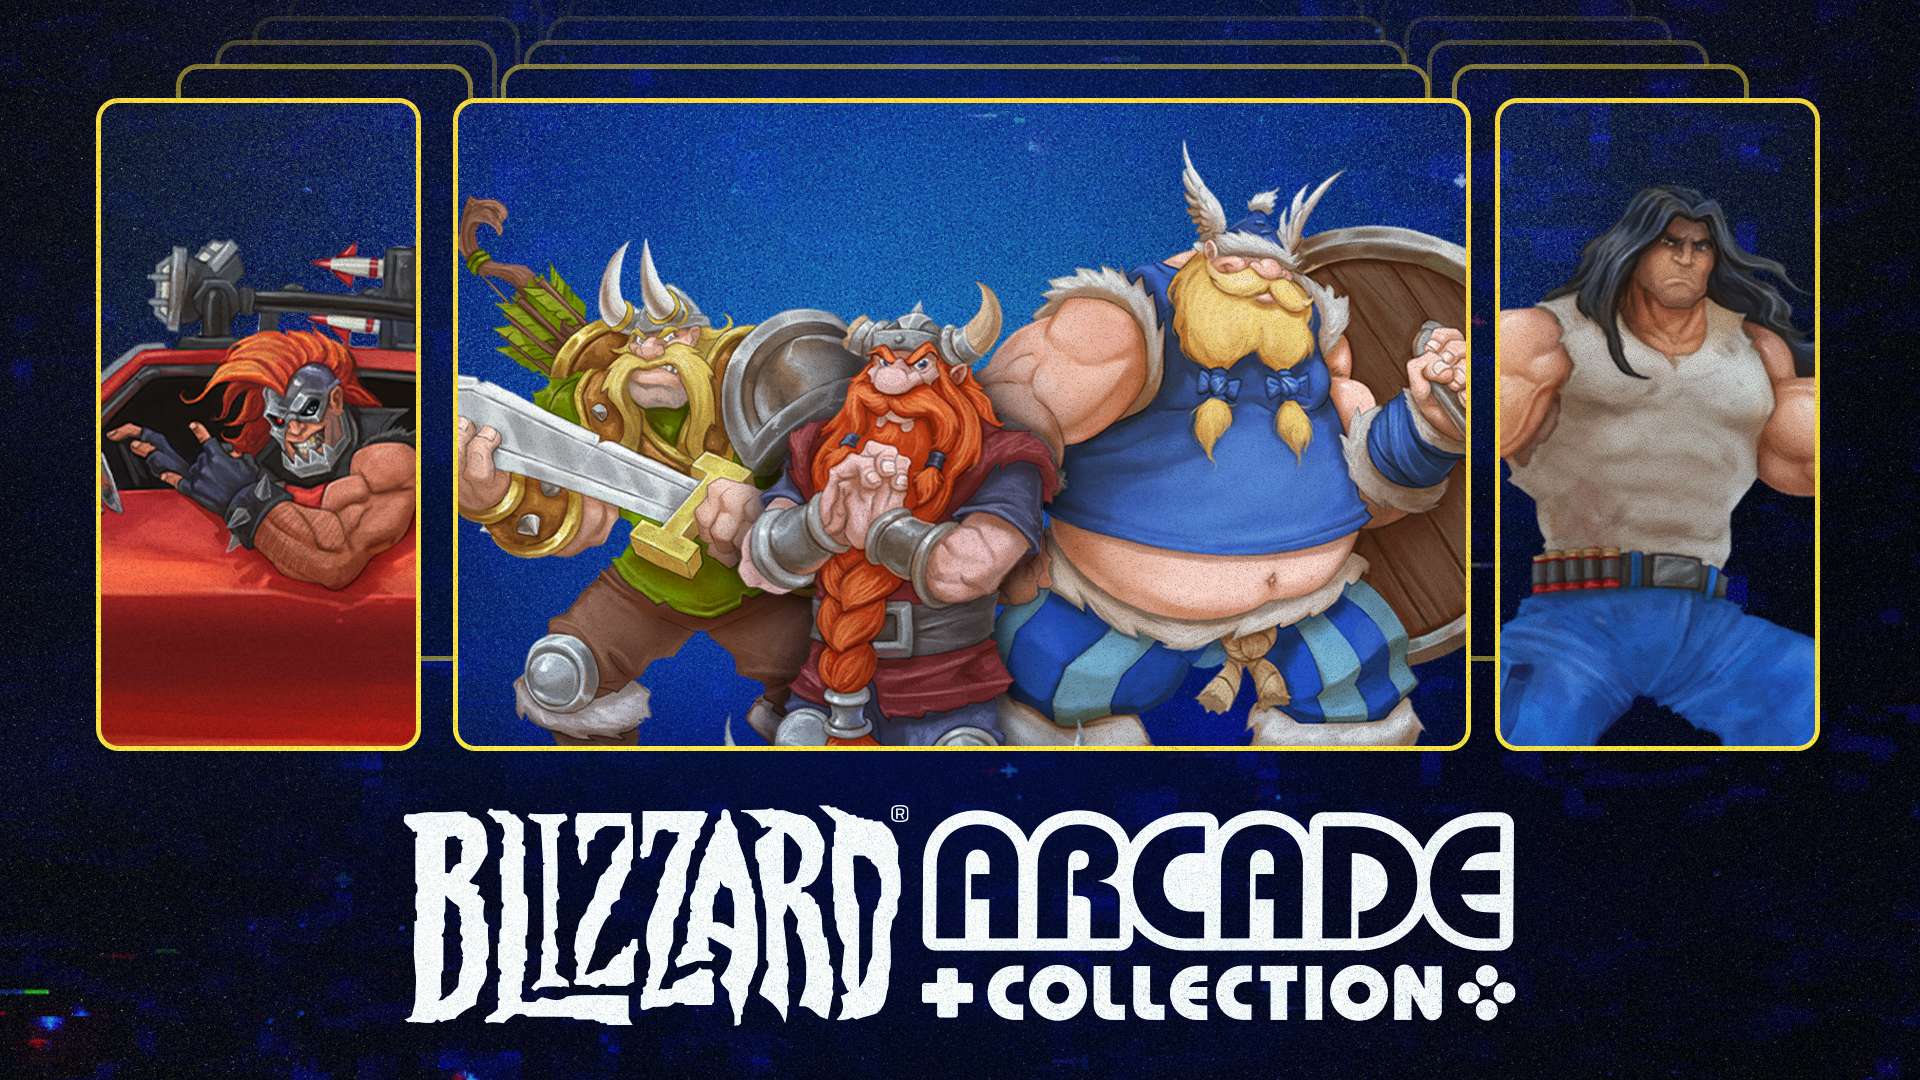 La Blizzard® Arcade Collection passe au niveau supérieur : deux nouveaux jeux et des fonctionnalités inédites